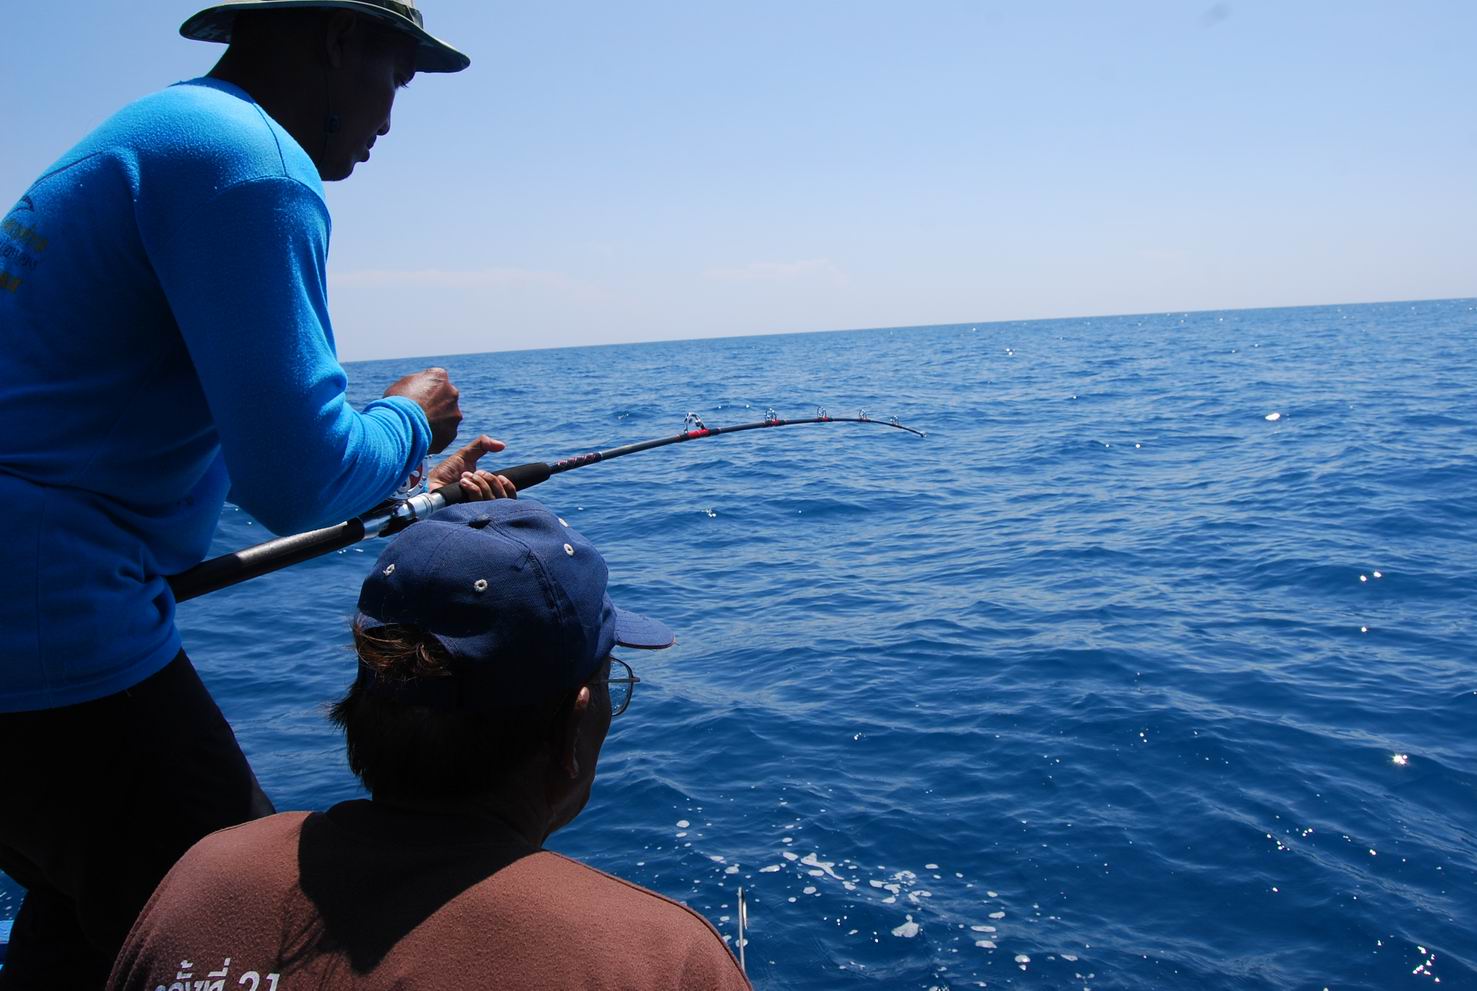 ระหว่างจิกลอยสายไว้สักพักใหญ่ๆ ปลาก็เข้าชาร์จเหยื่อ (ปกติลงสายลอยปุ้บไม่เกิน 10-15 นาทีปลาเข้าชารืจเ